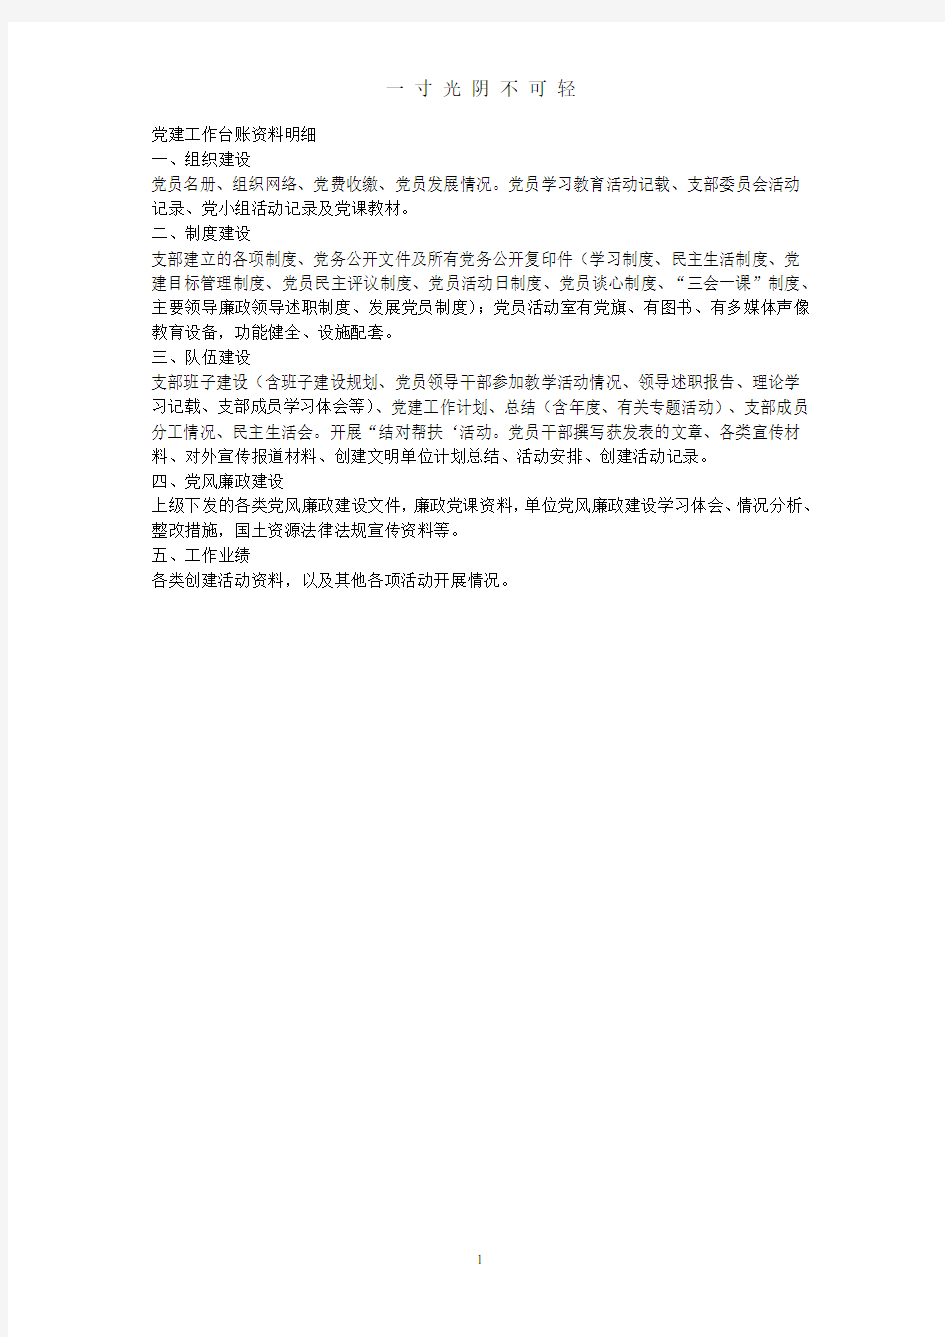 党建工作台账资料明细(详细完整).pdf